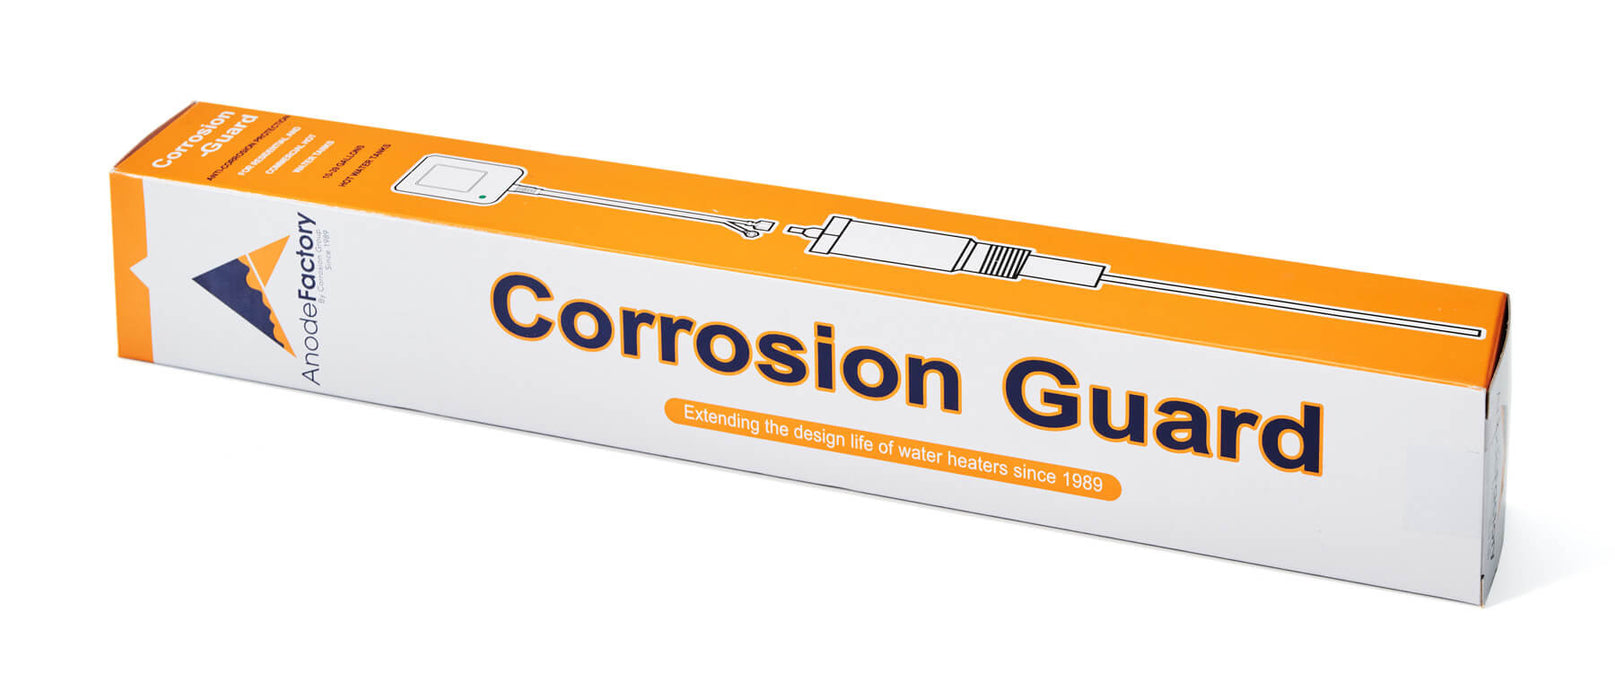 Corrosion Guard - Tie anode alimentée pour chauffe-eau, 90-120 gallons, 3/4 "-14 npt, adaptateur US